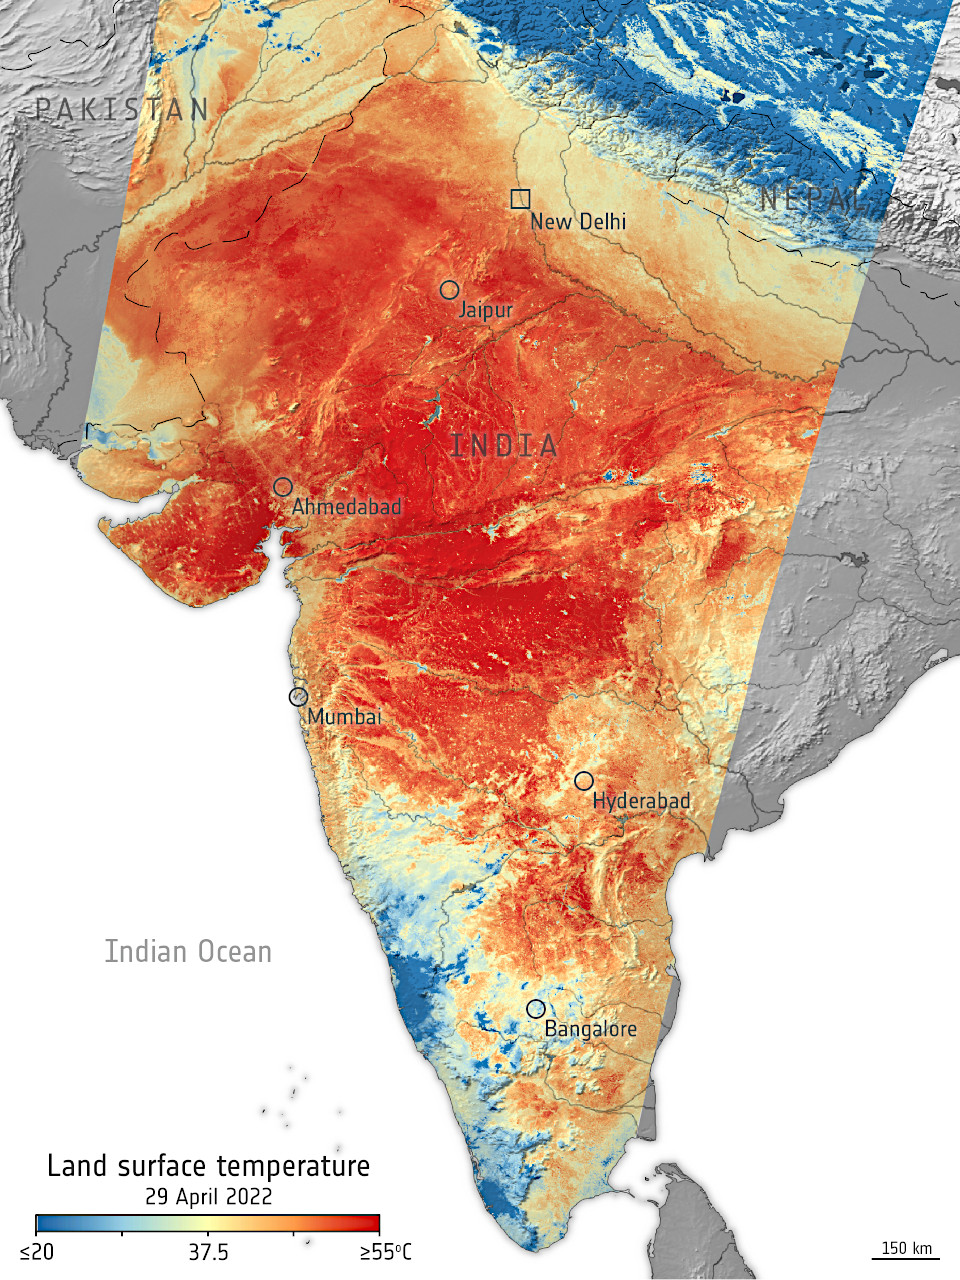 https://astropics.bookbright.co.jp/wp-content/uploads/2022/05/Heatwave_across_India-1280.jpg